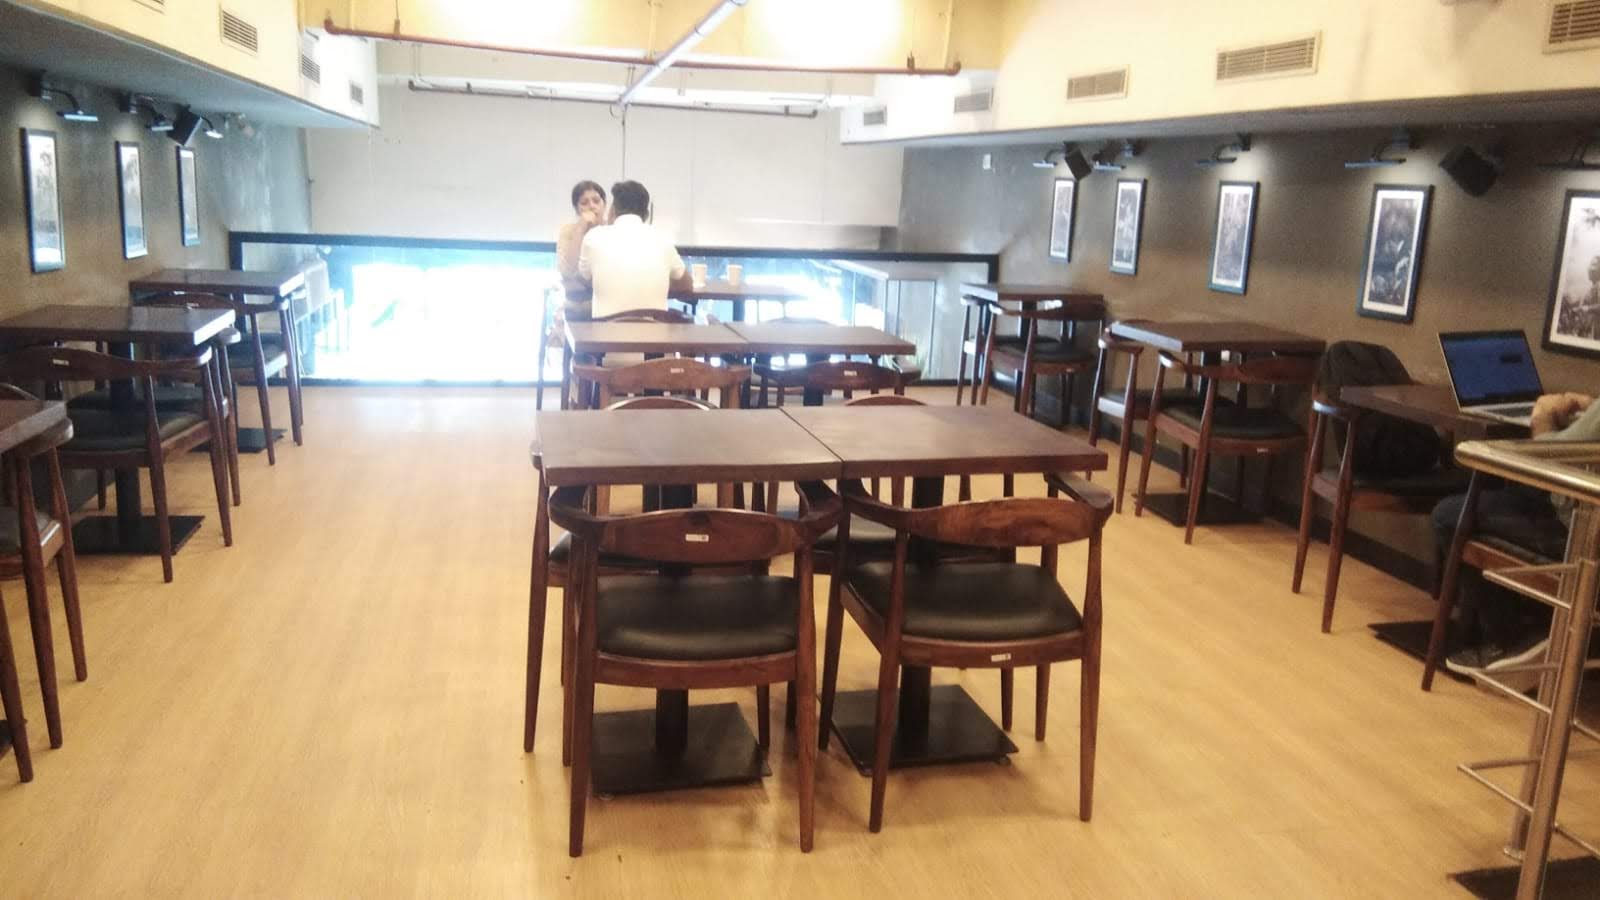 Chai Point - Sector 47, Gurgaon Cafe - Sector 47, Gurgaon